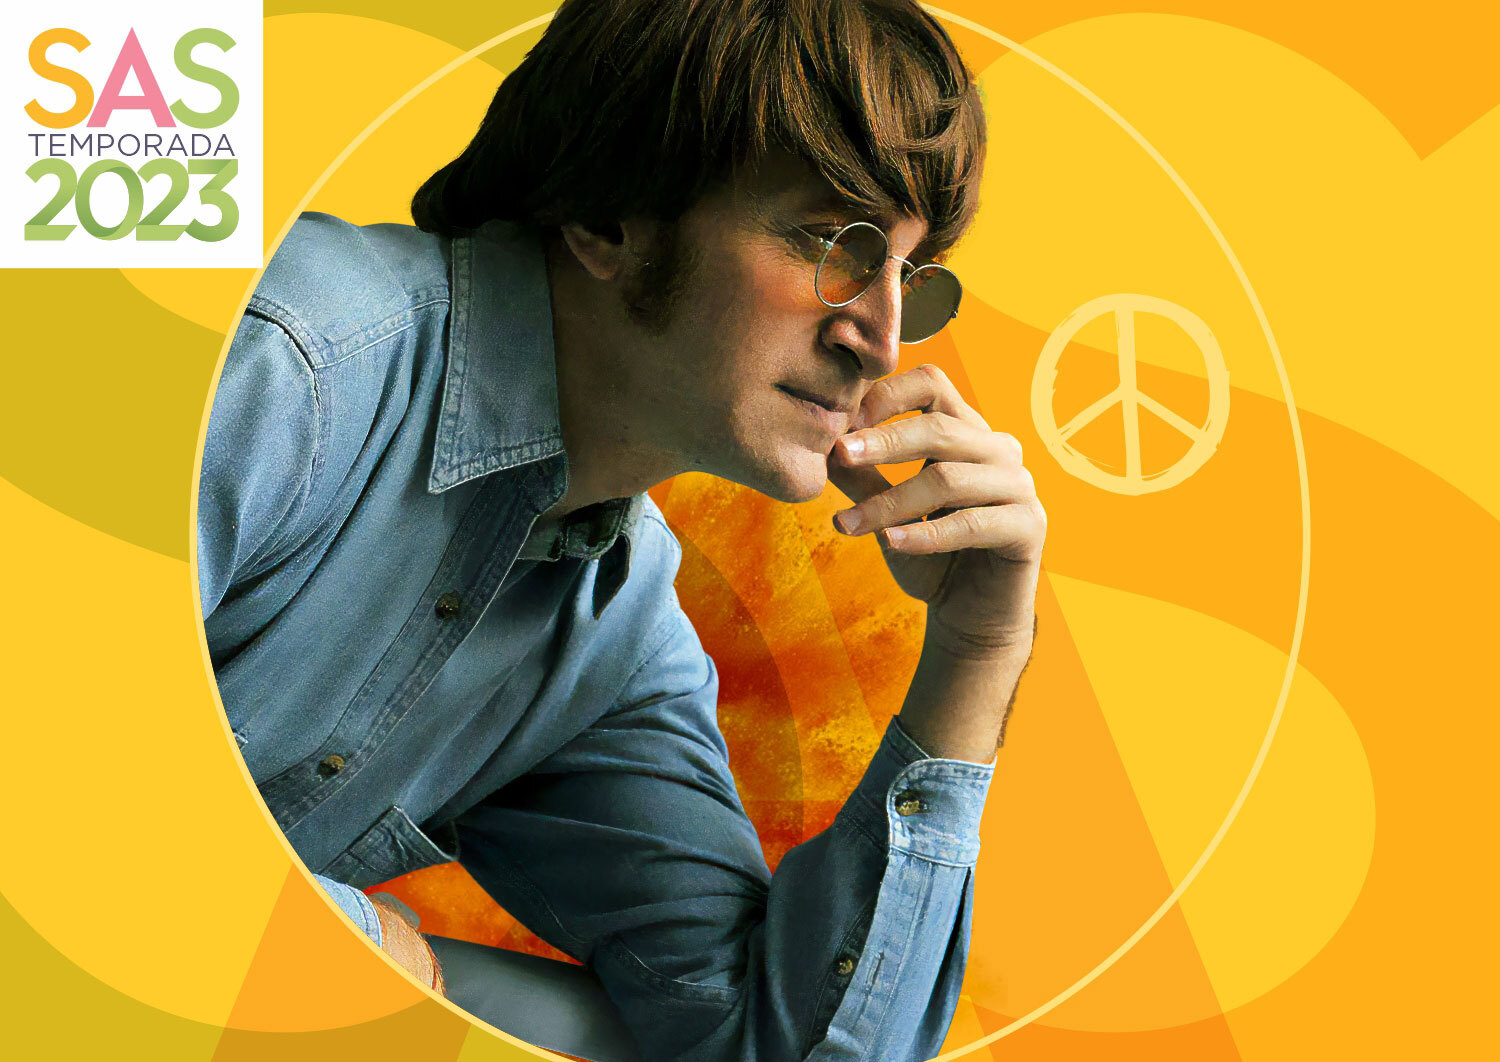 The John Lennon Symphonic Fantasy